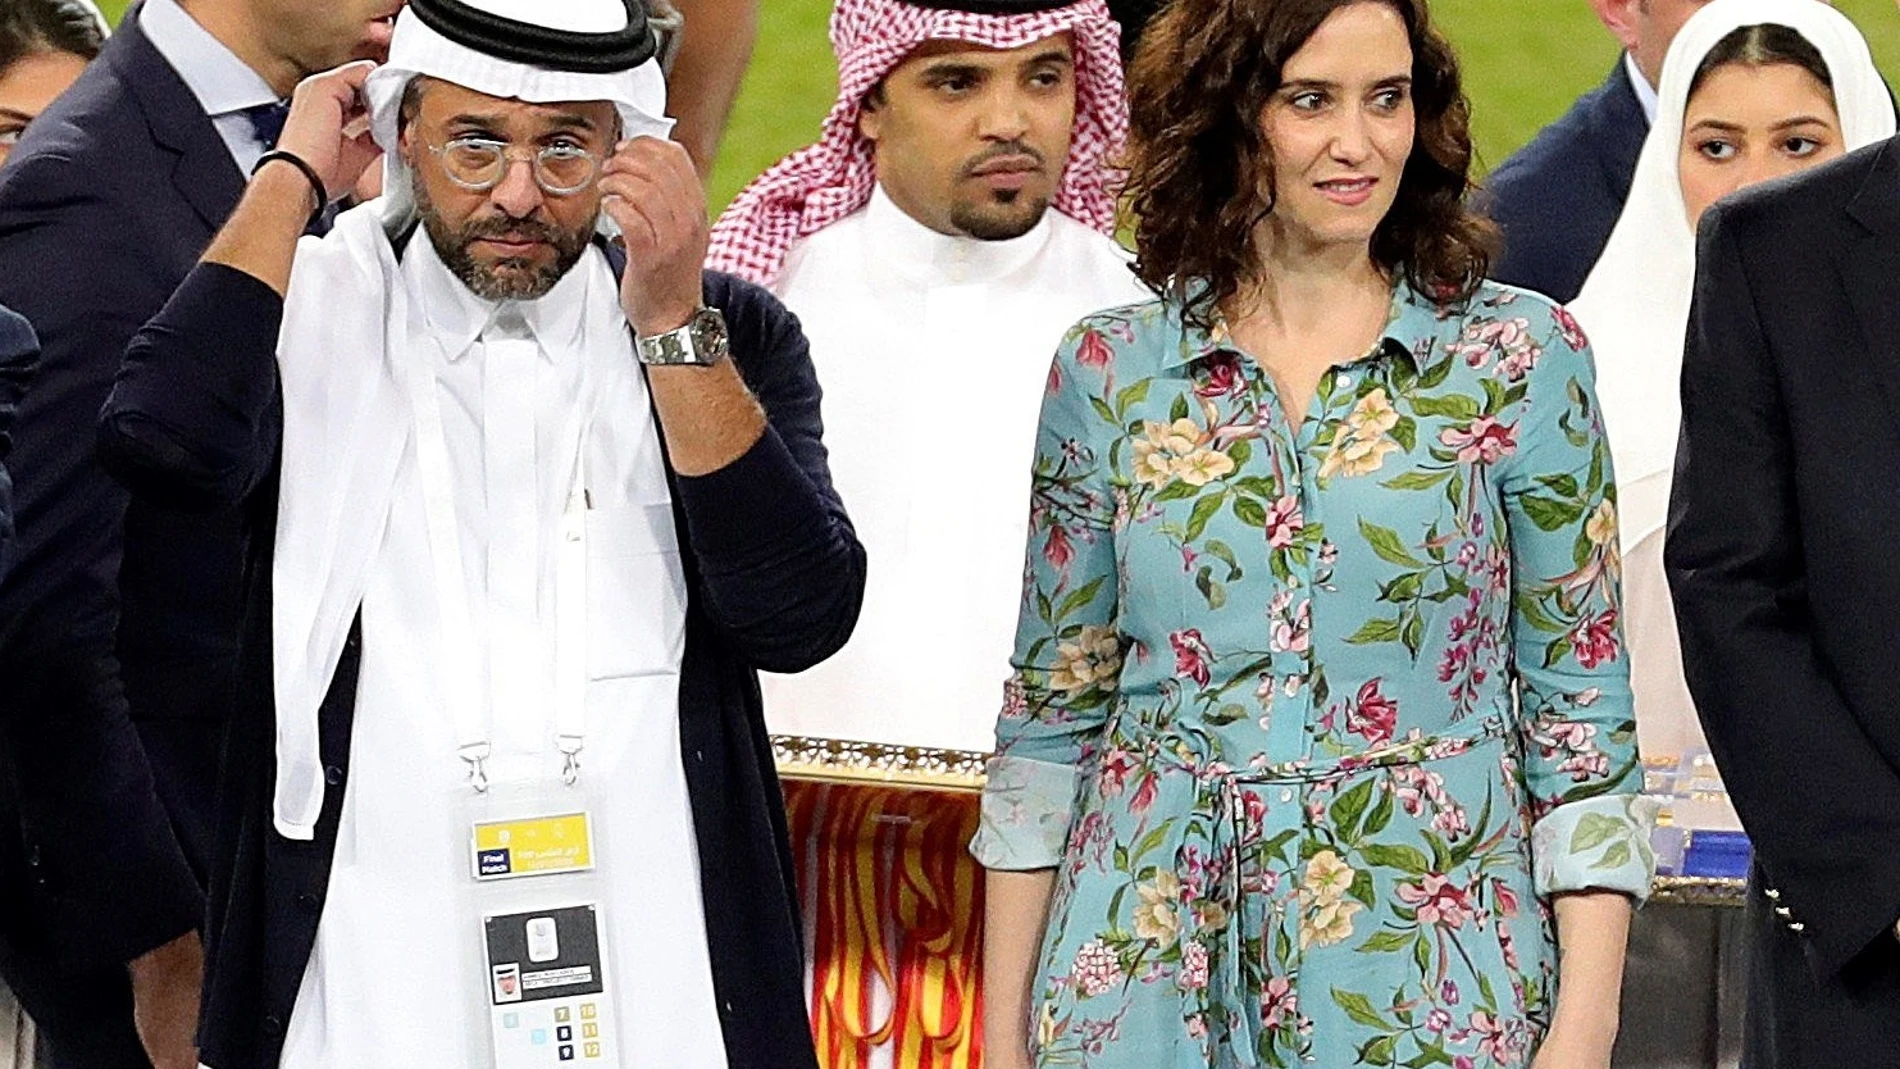 La asistencia de la presidenta de Madrid, Isabel Díaz Ayuso, a la final de la Supercopa en la ciudad saudí de Yeda sin cubrir su cabeza, generó debate en las redes sociales.